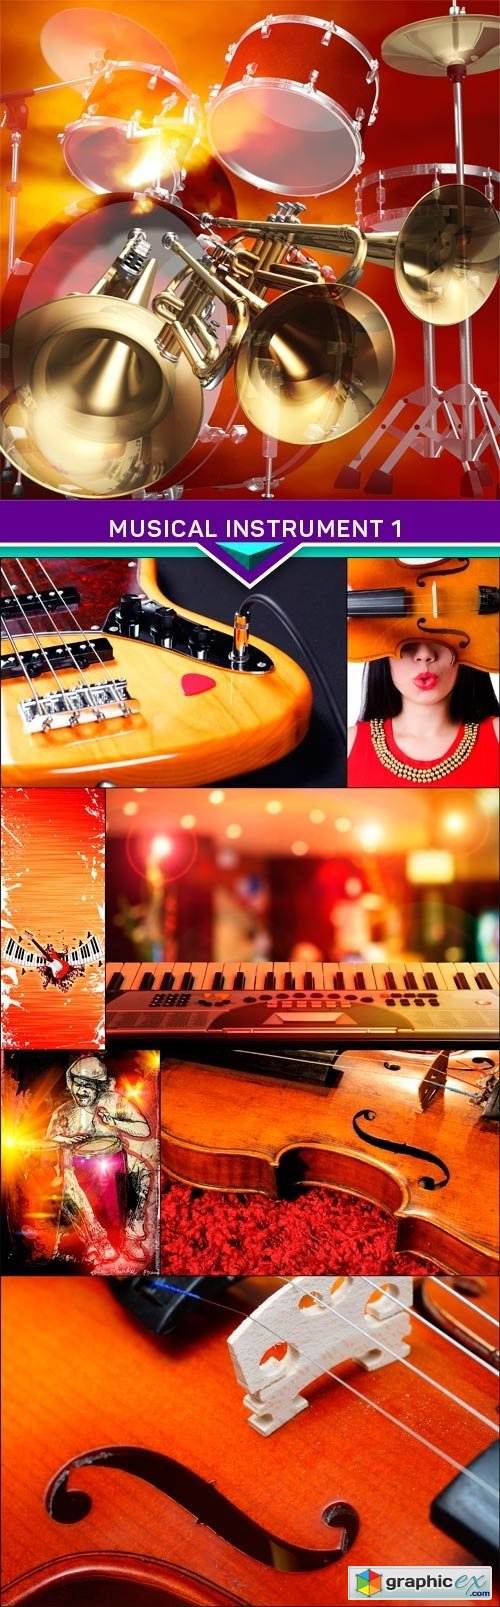 Musical instrument, red orange background 1 8x JPEG